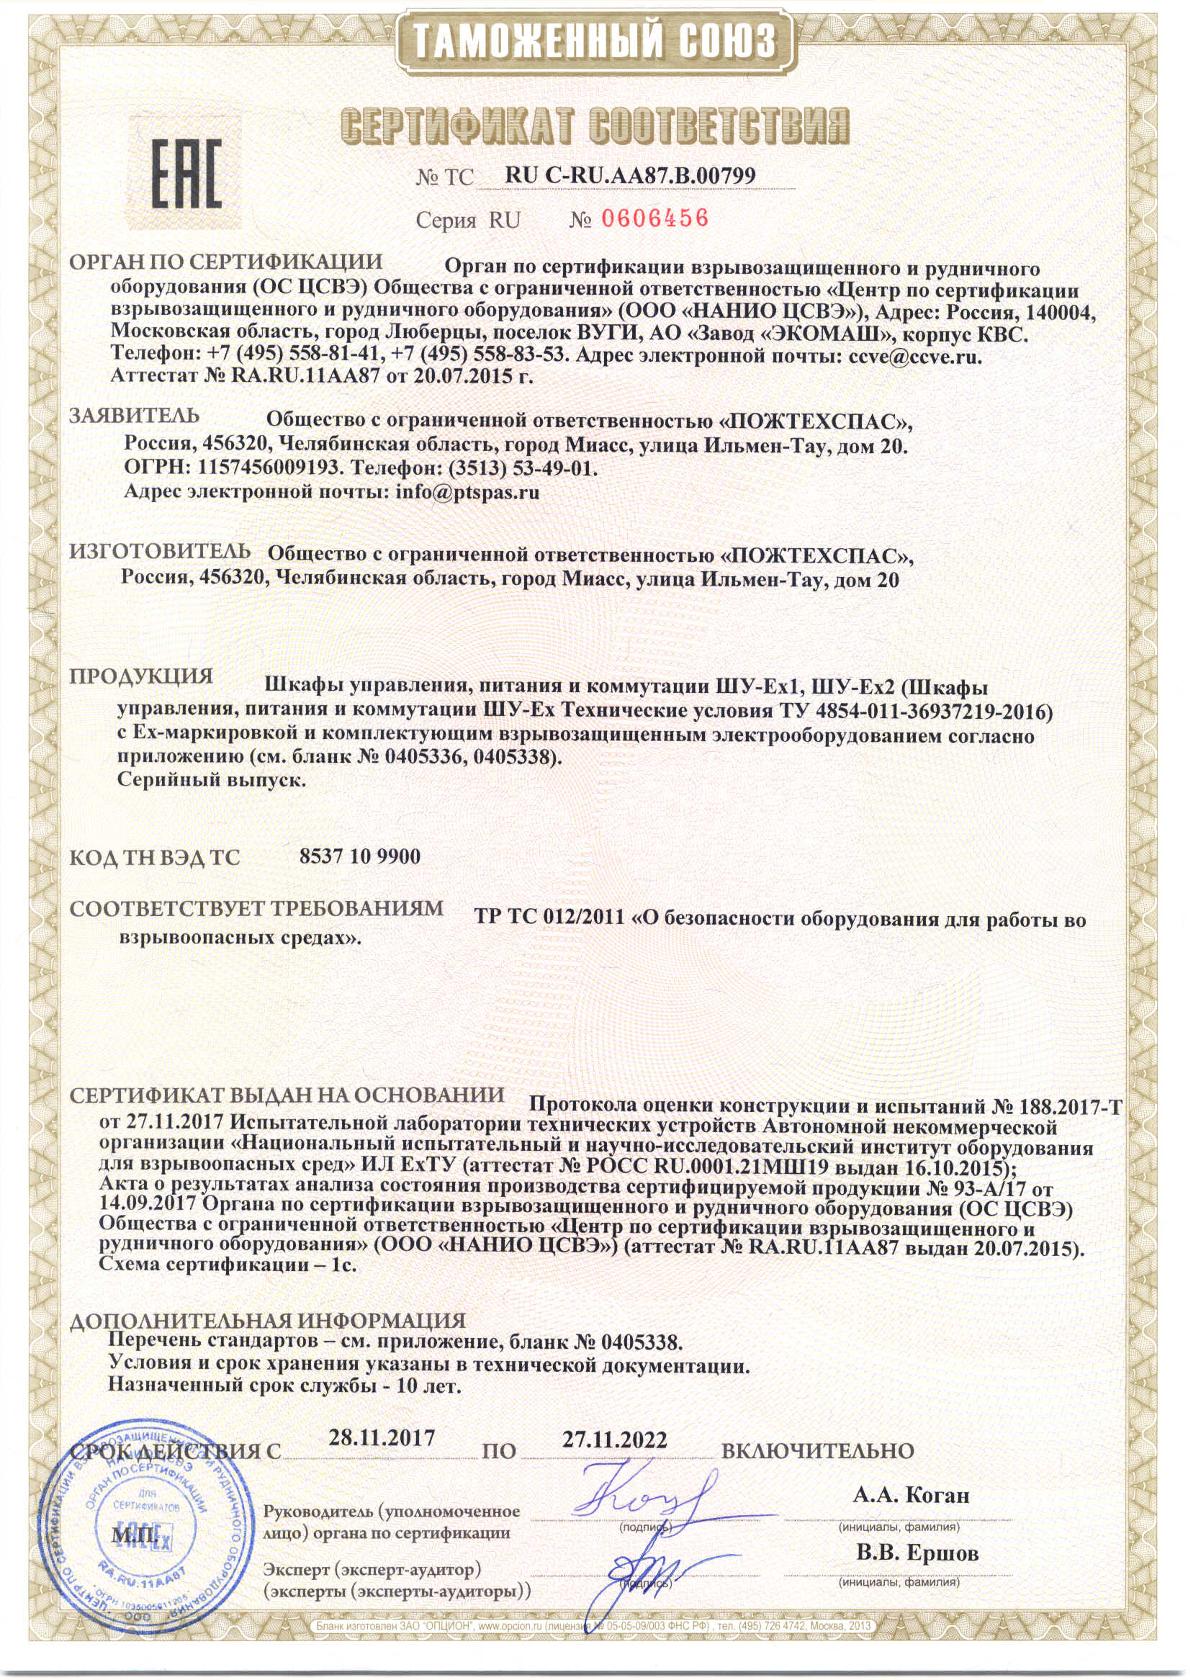 Сертификат соответствия Таможенного союза Шкафы управления, питания и коммутации 